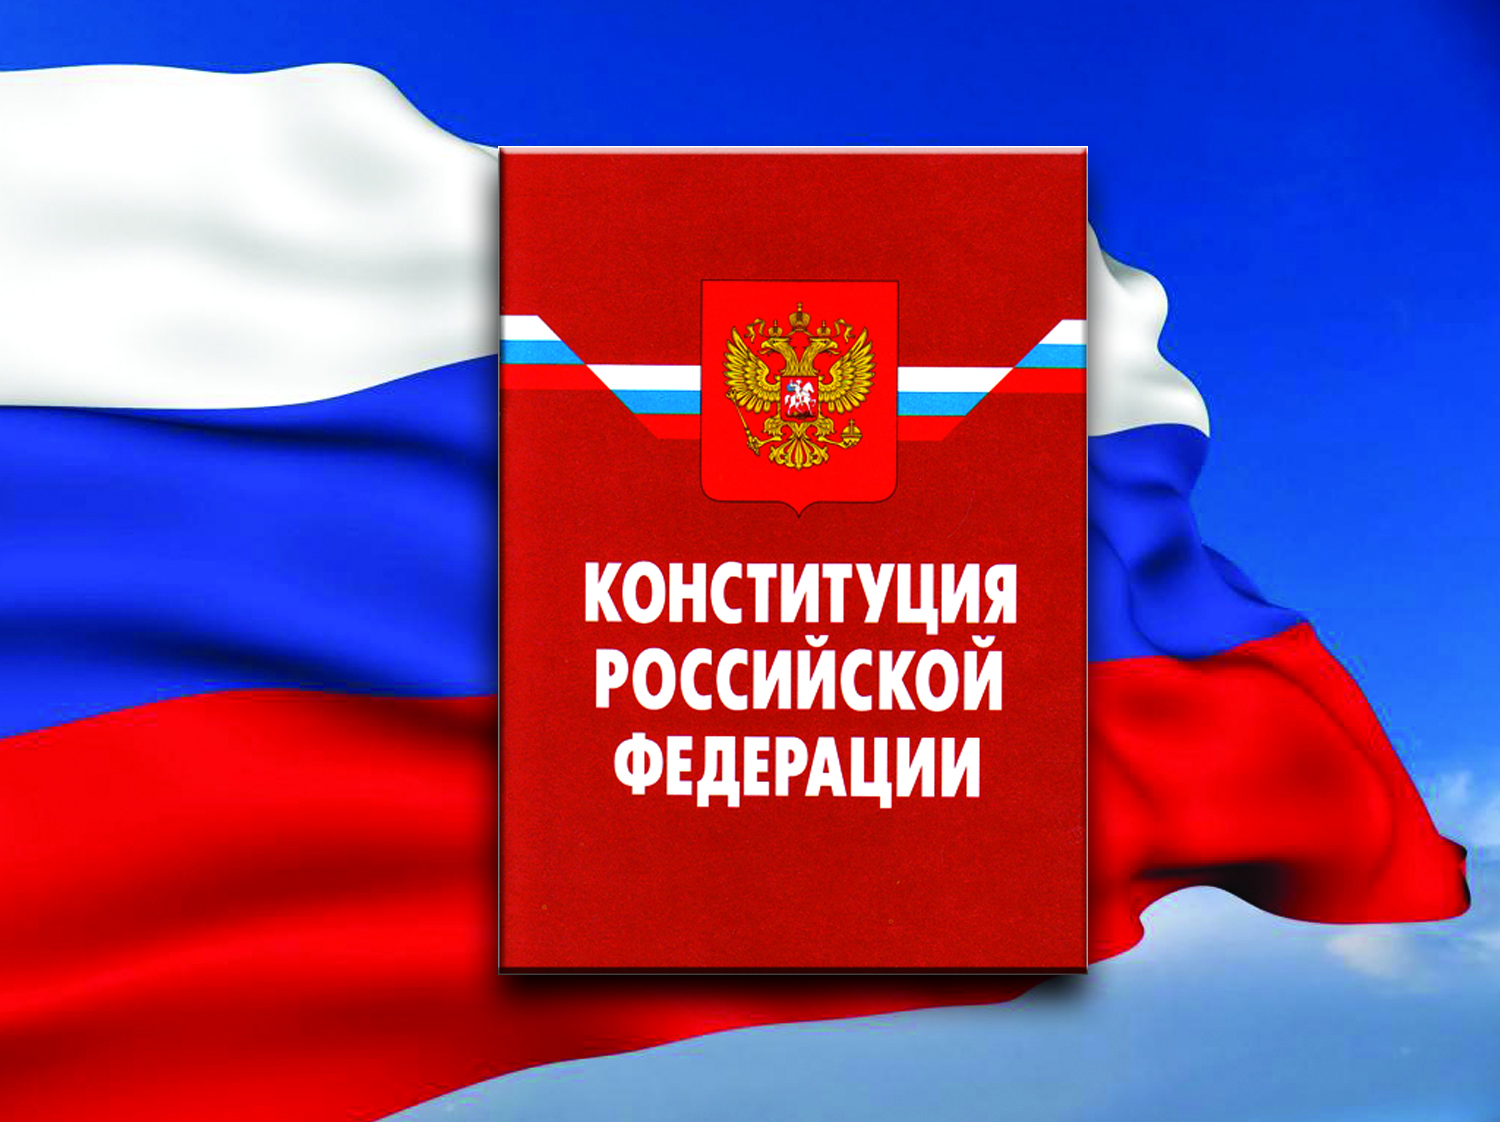 Электронное голосование по поправкам к Конституции РФ пройдет в нескольких регионах